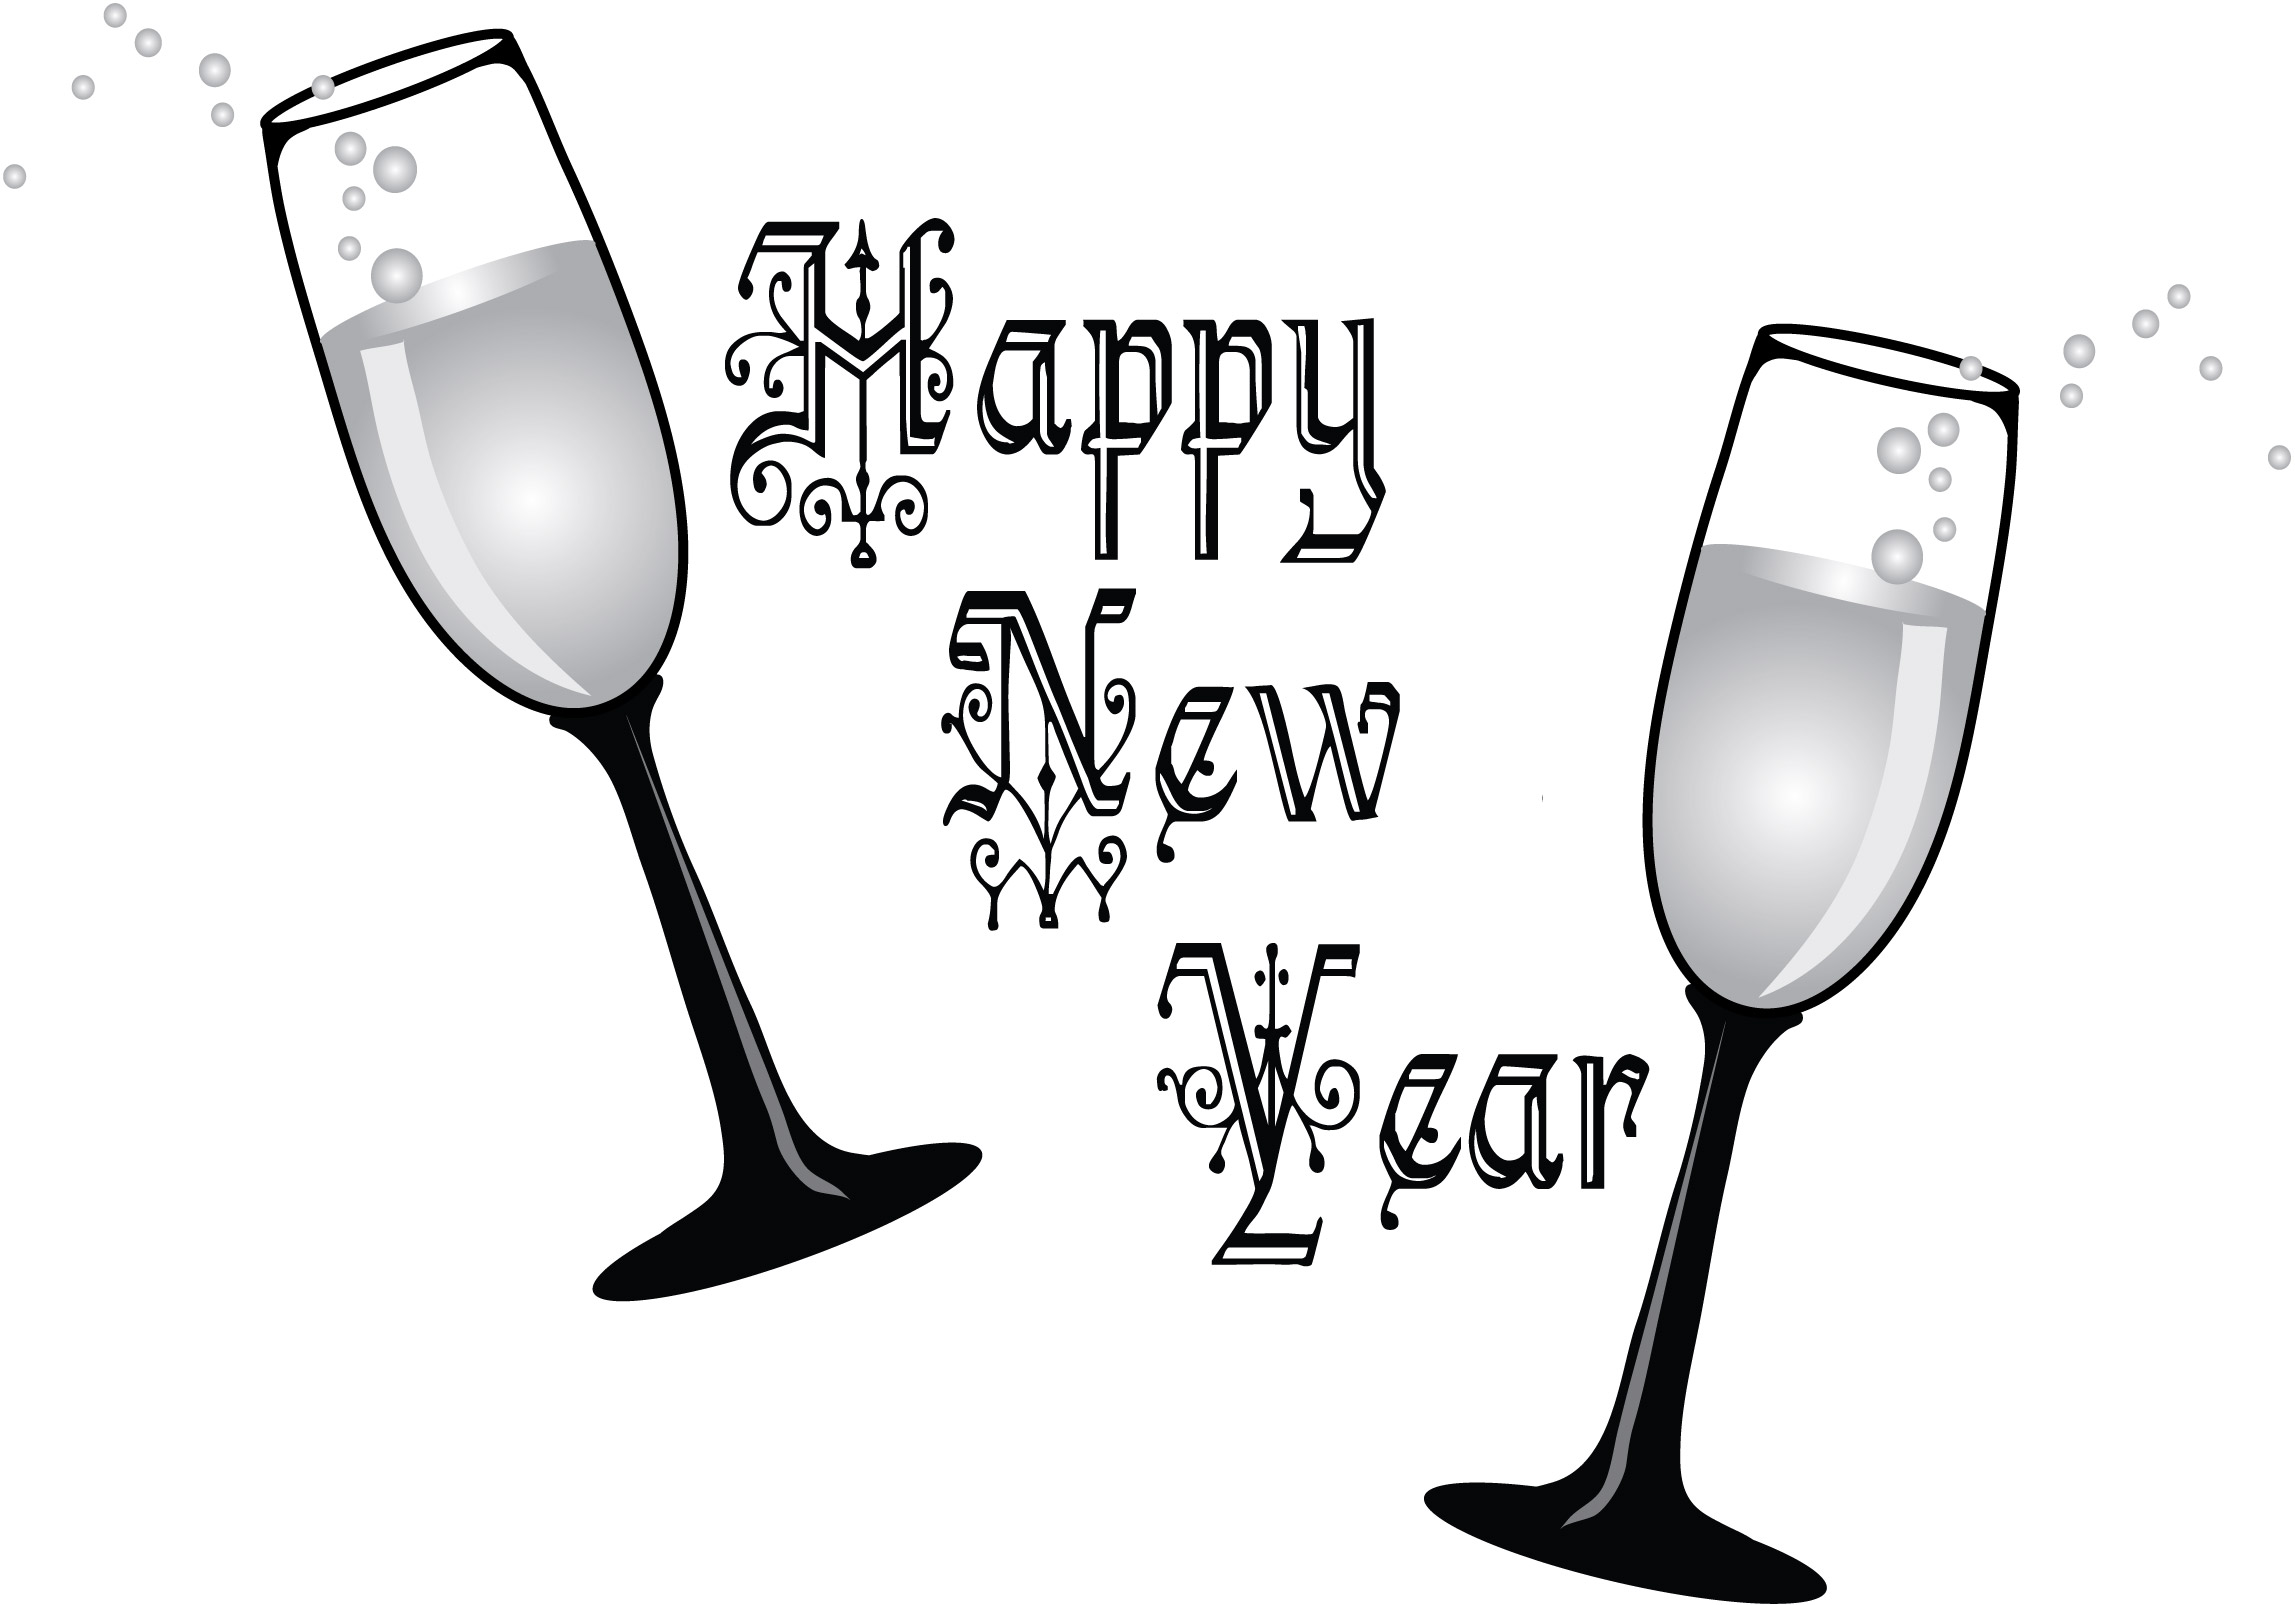 Happy-New-Year-2015-Clip-Art-